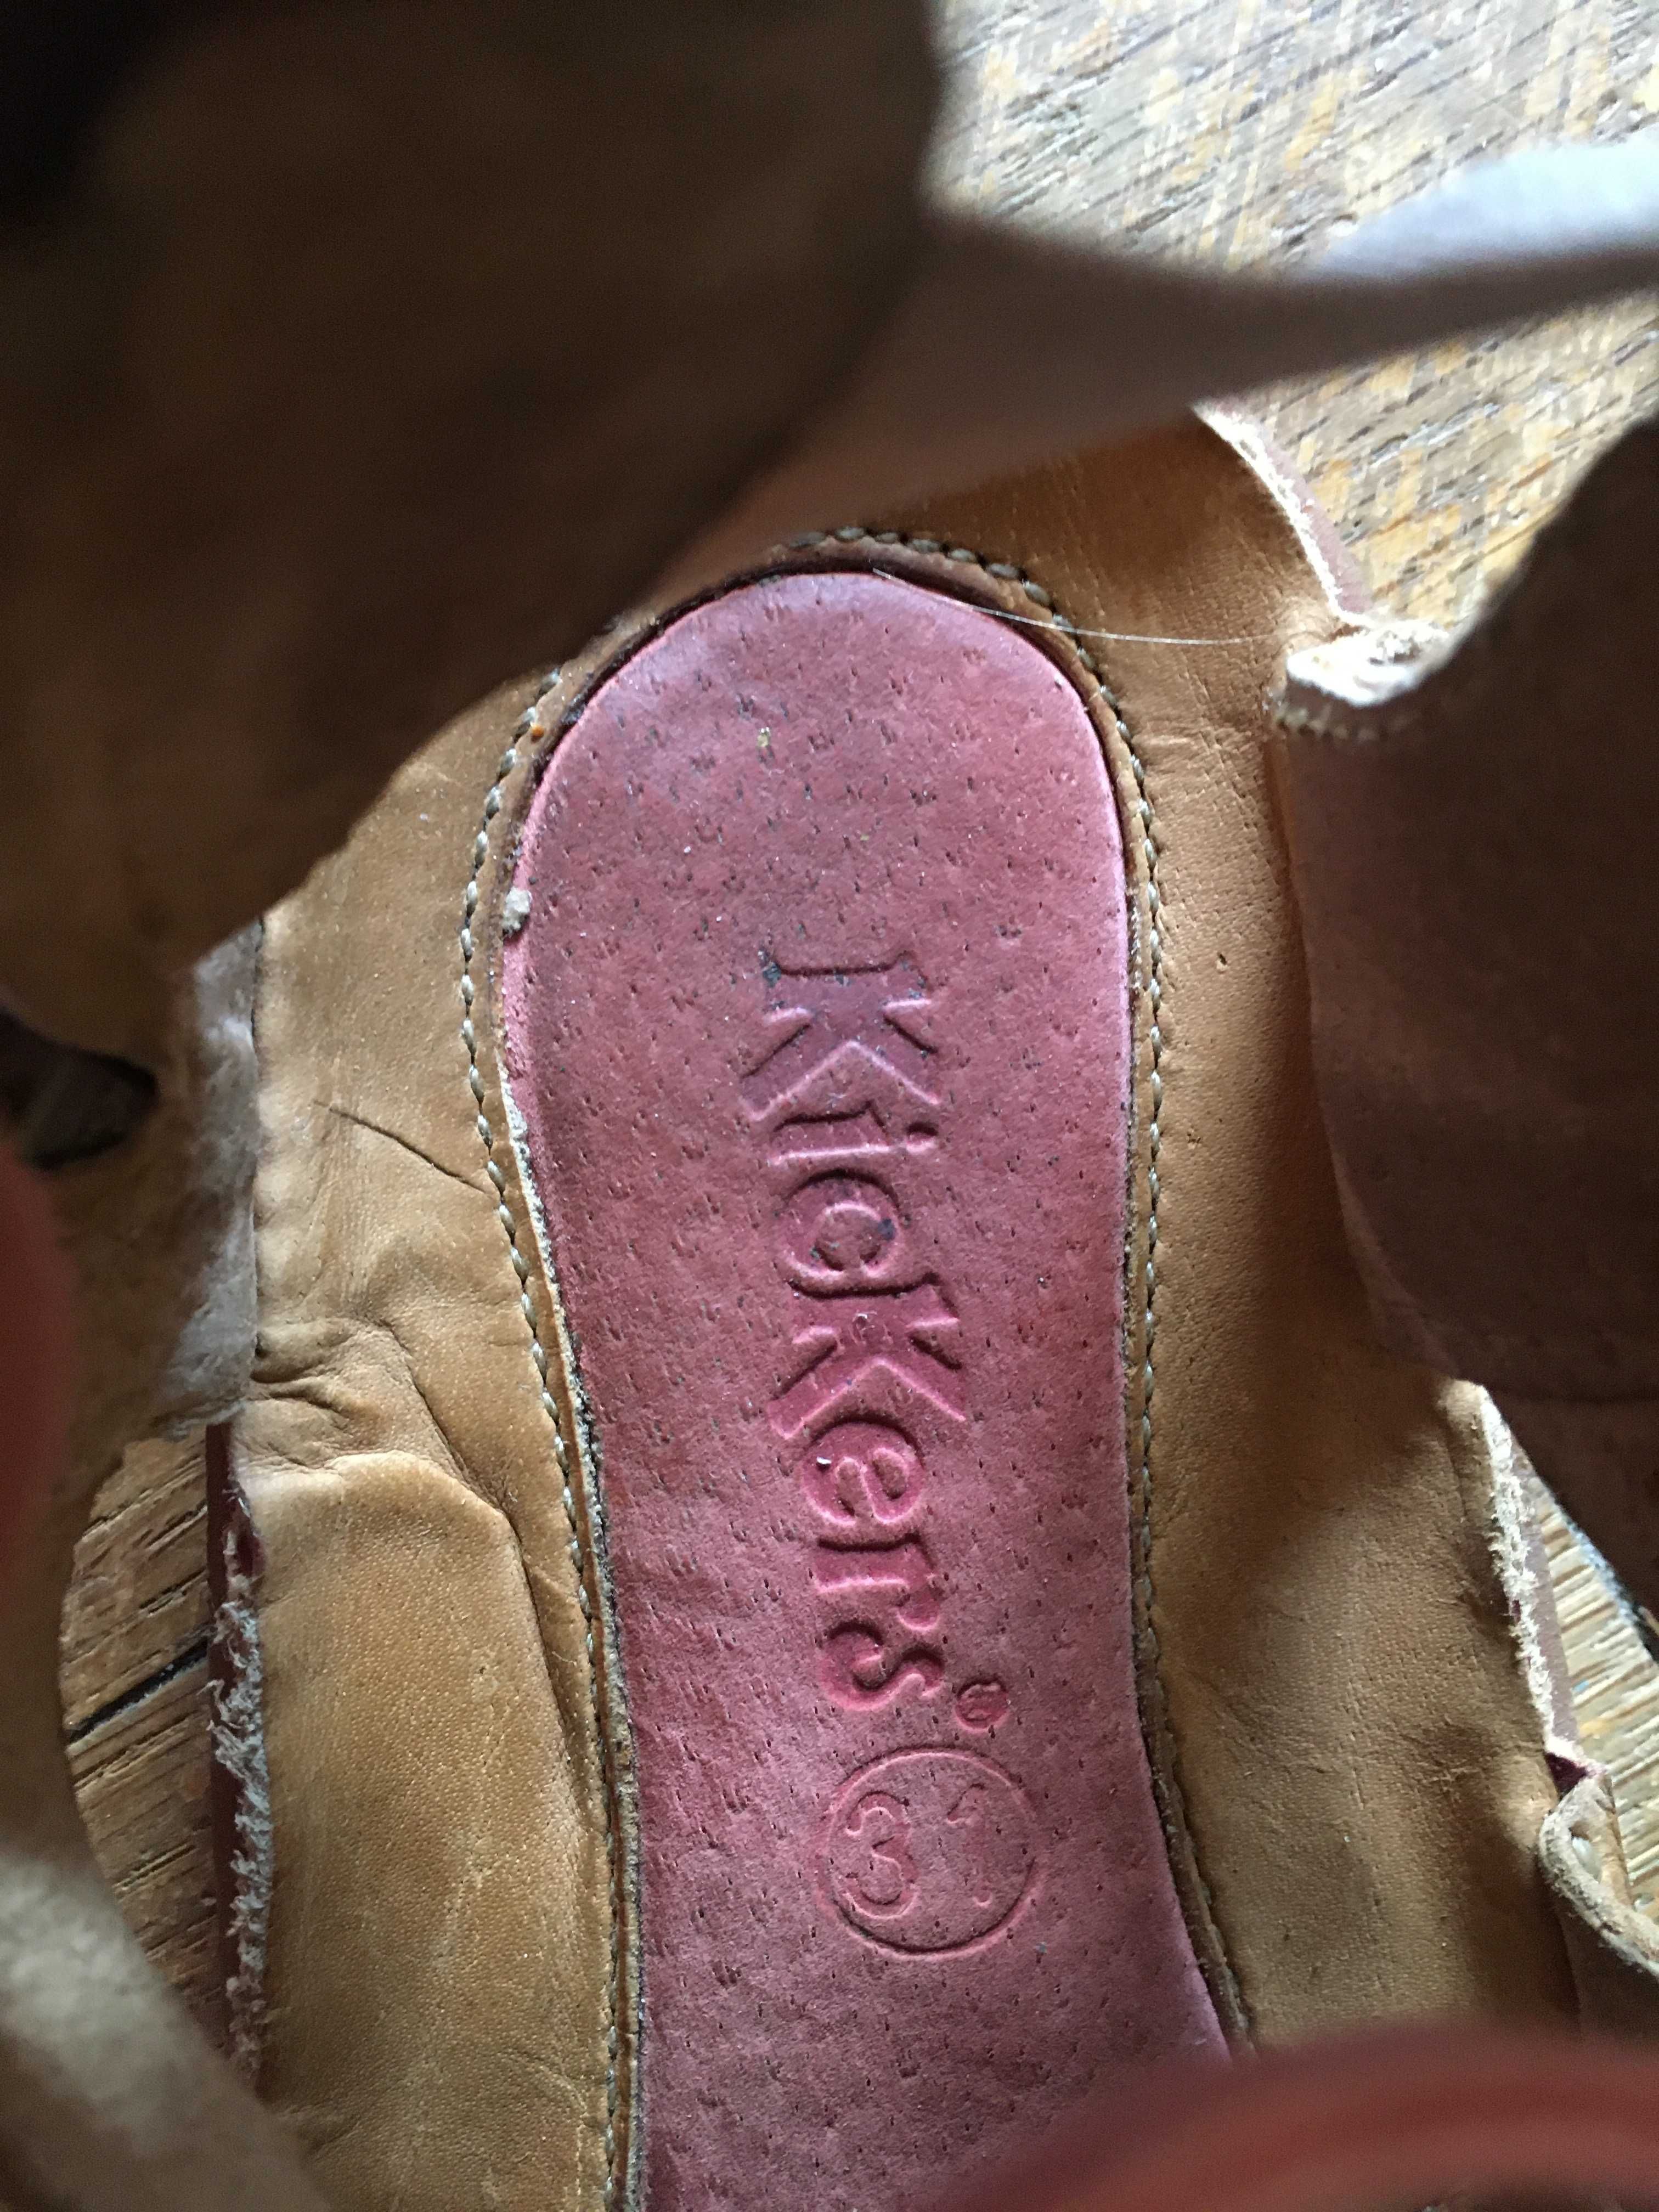 Sandałki Kickers dla dziewczynki skórzane, rozmiar 30-31